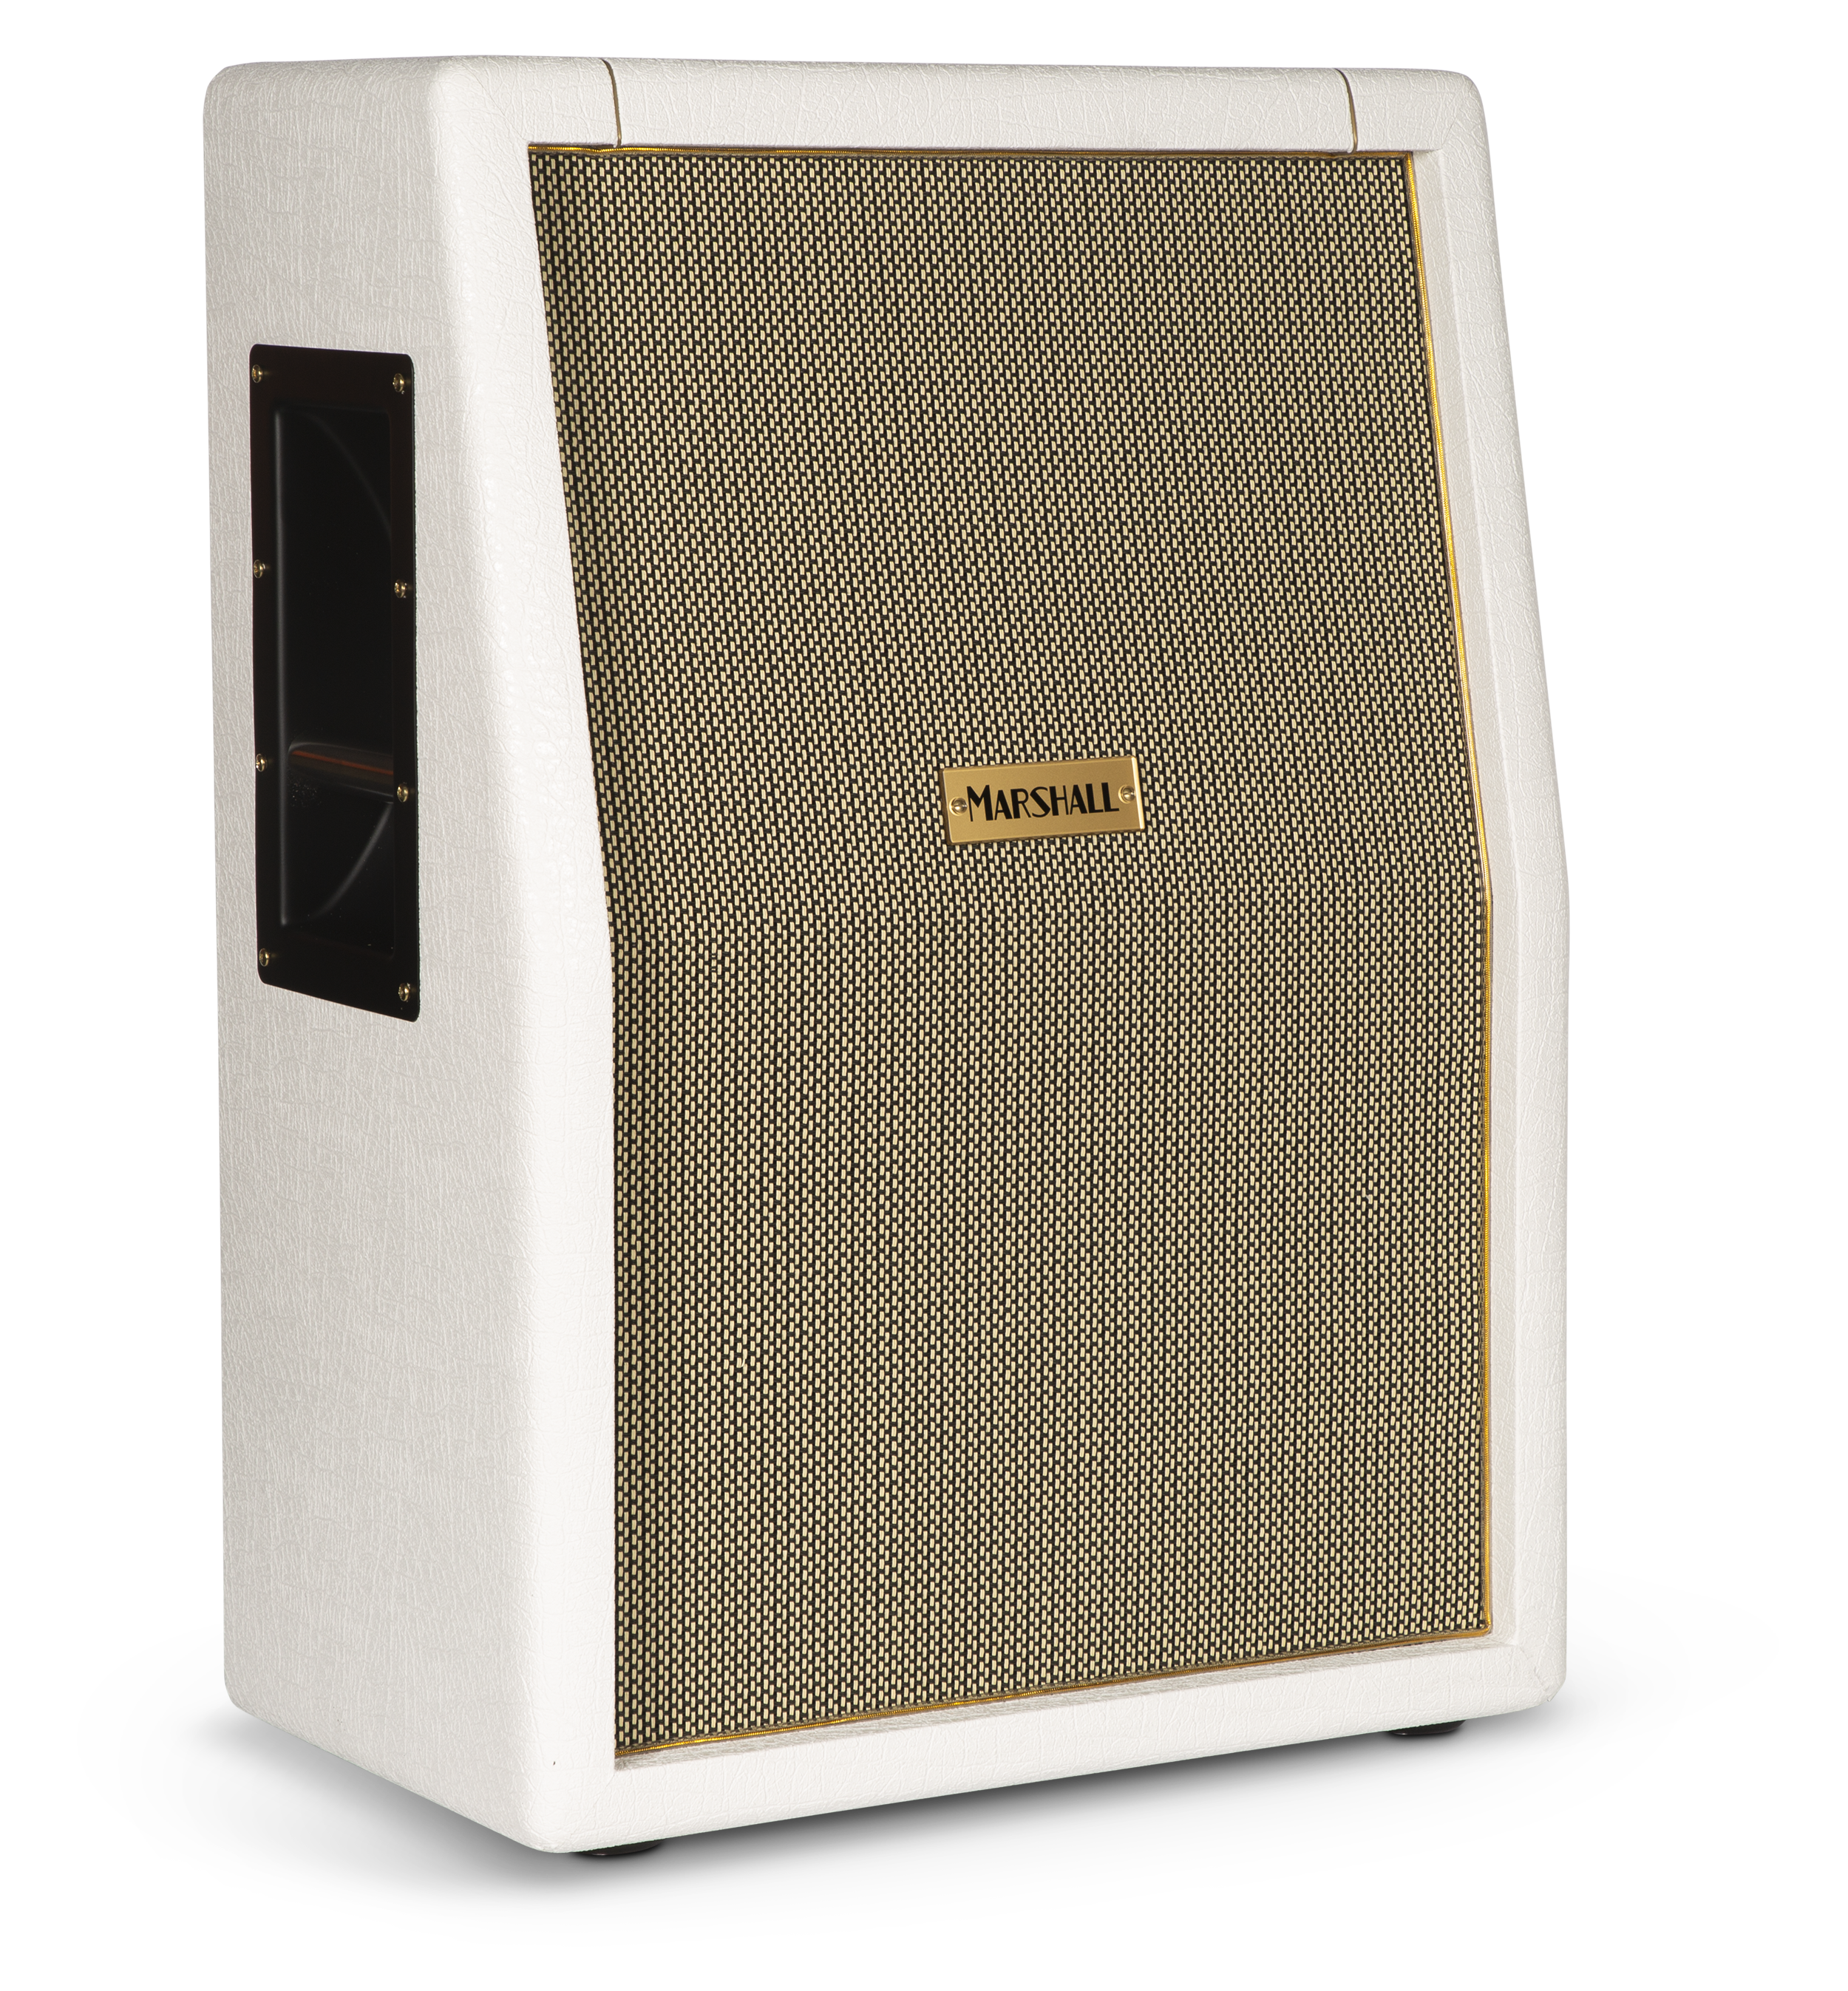 Marshall SV212 Studio Vintage 140-watt 2x12" Vertical Extension Cabinet - Special Edition